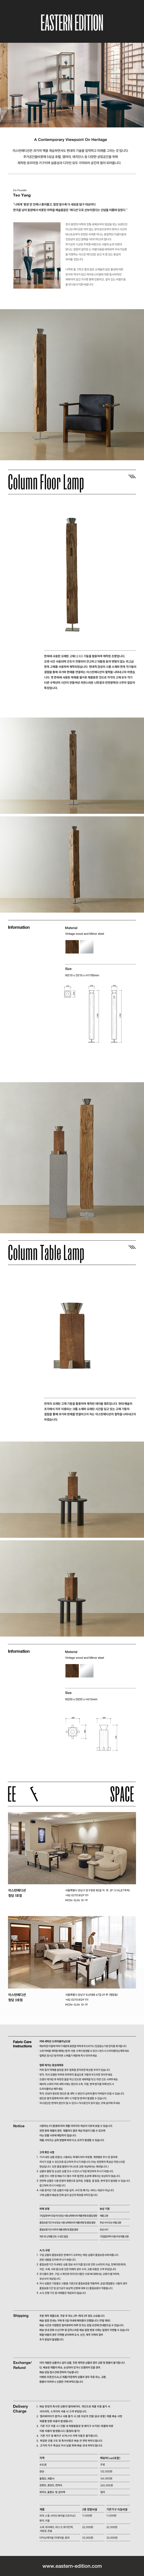 ColumnFloor+TableLamp_122957.jpg